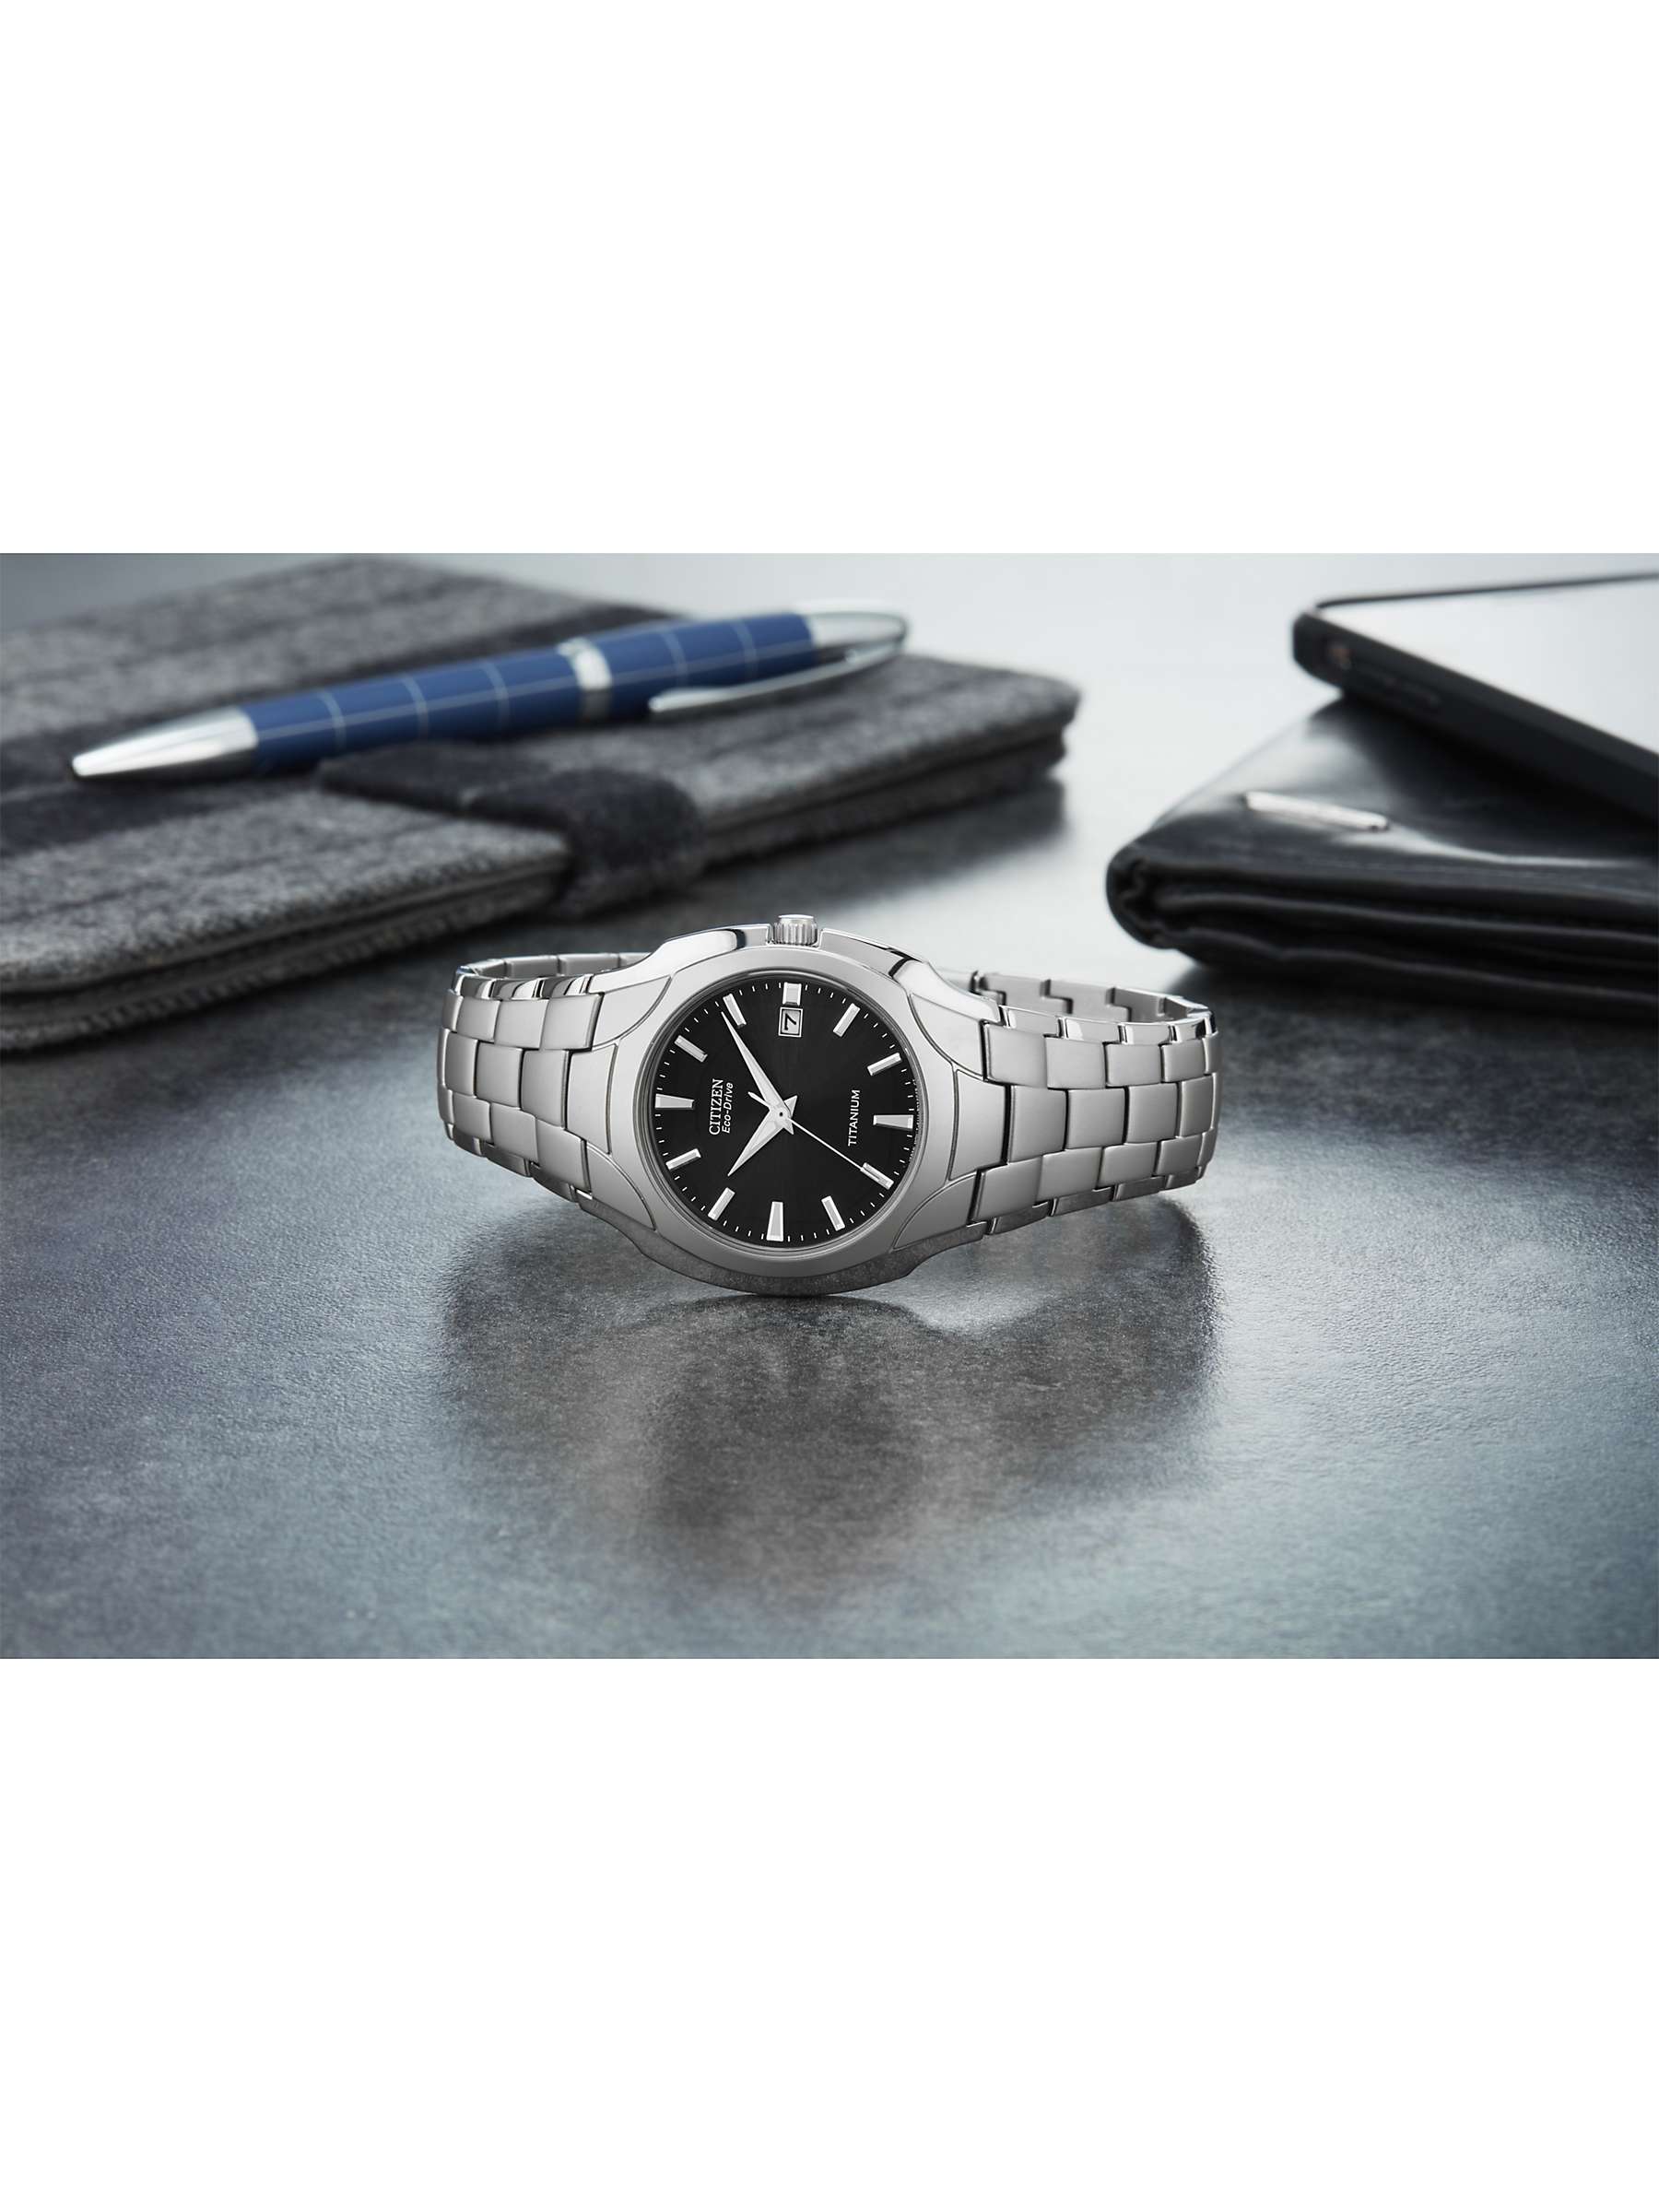 Buy Citizen BM7440-51E Men's Eco-Drive Date Titanium Bracelet Strap Watch, Silver/Black Online at johnlewis.com